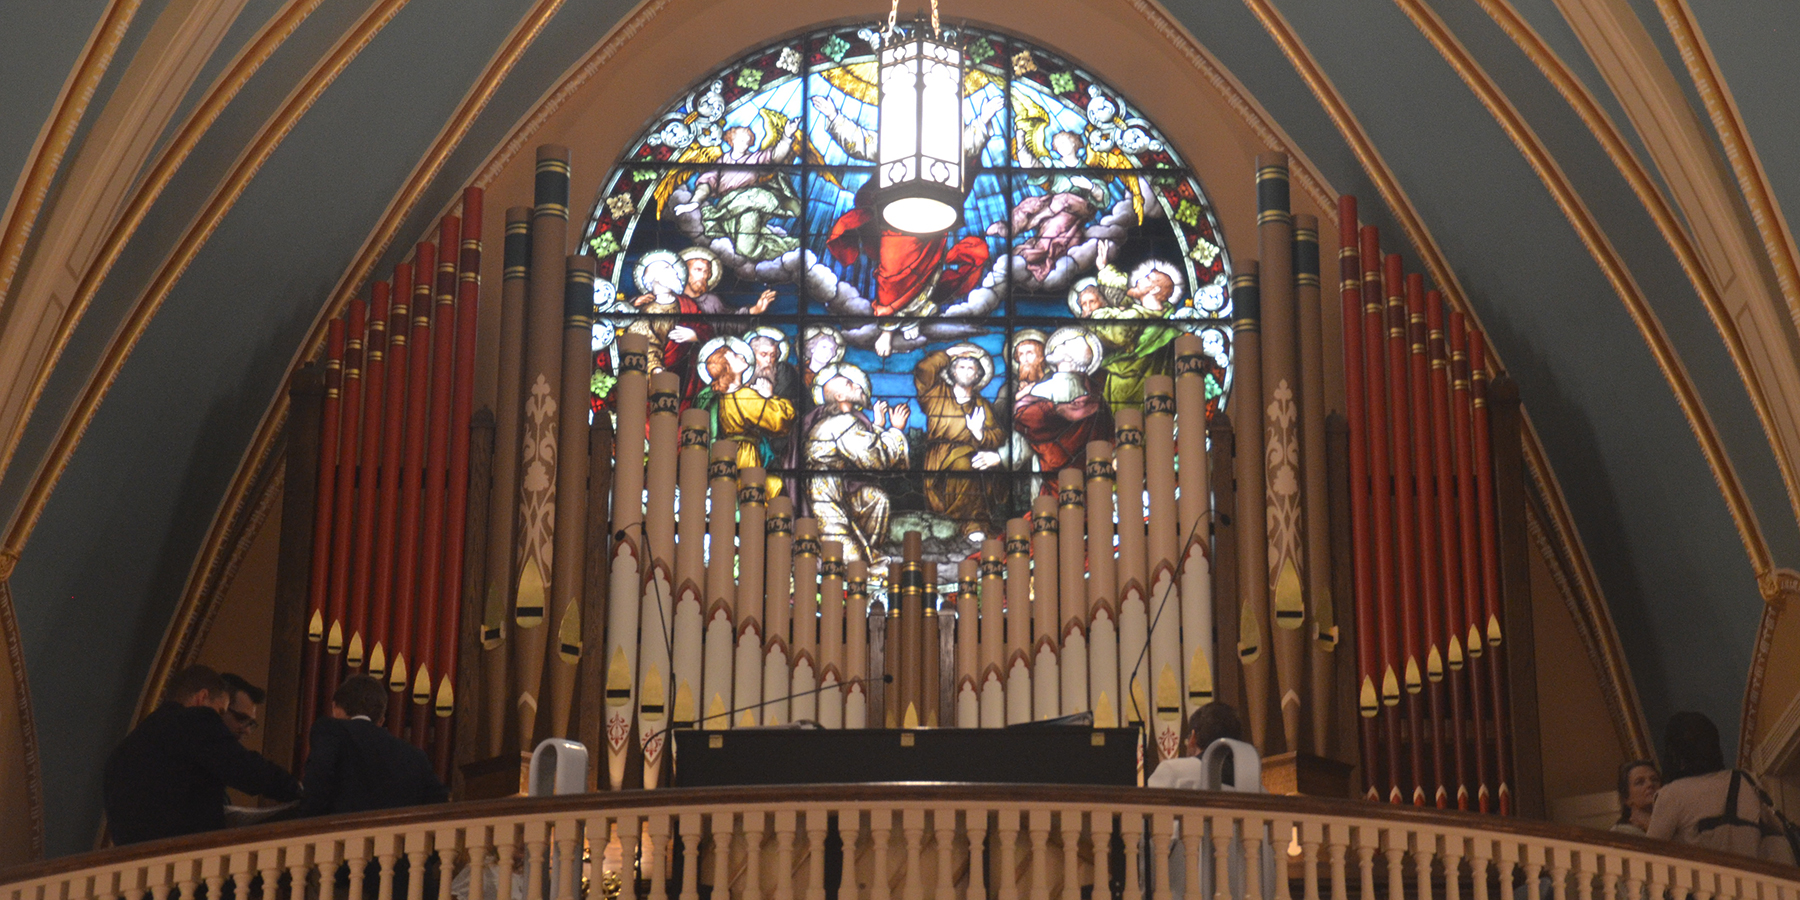 The organ pipes at St. Francis